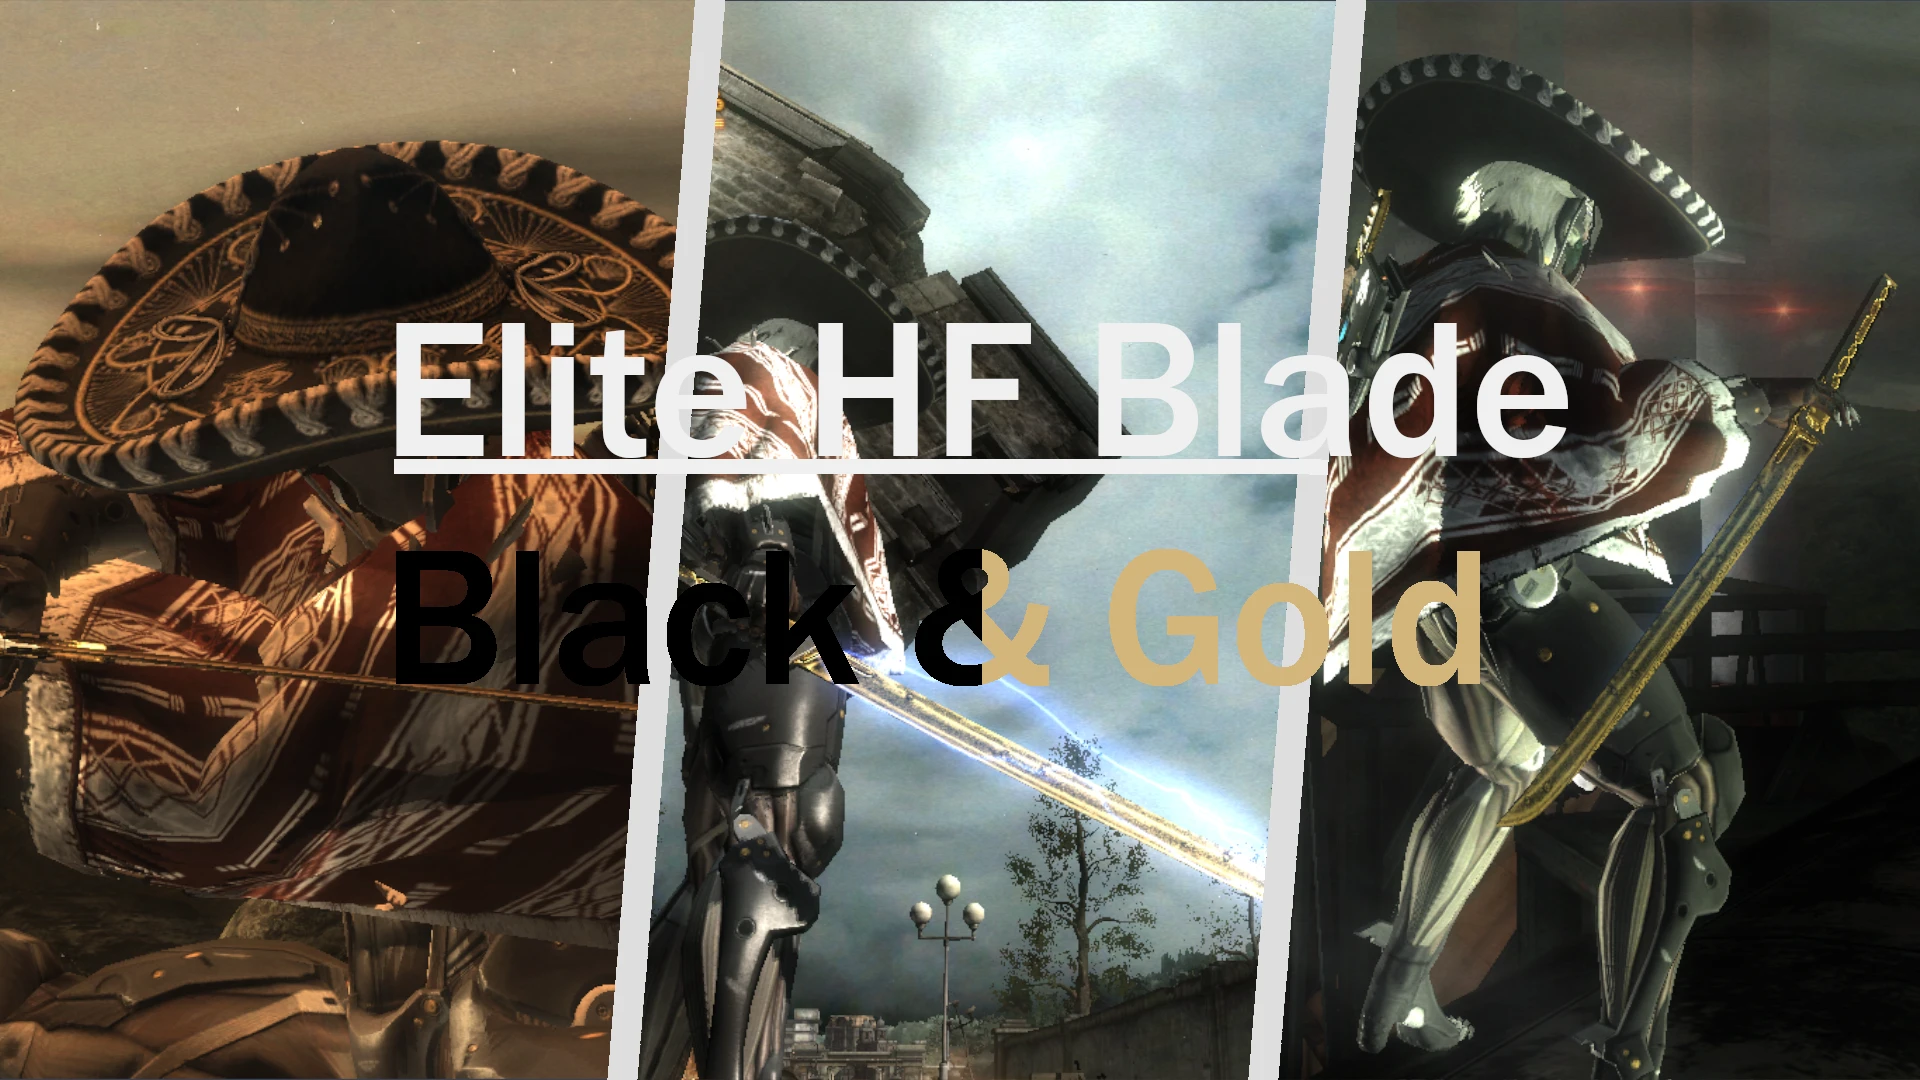 Black And Gold Katana (Murasama Blade) at Metal Gear Rising